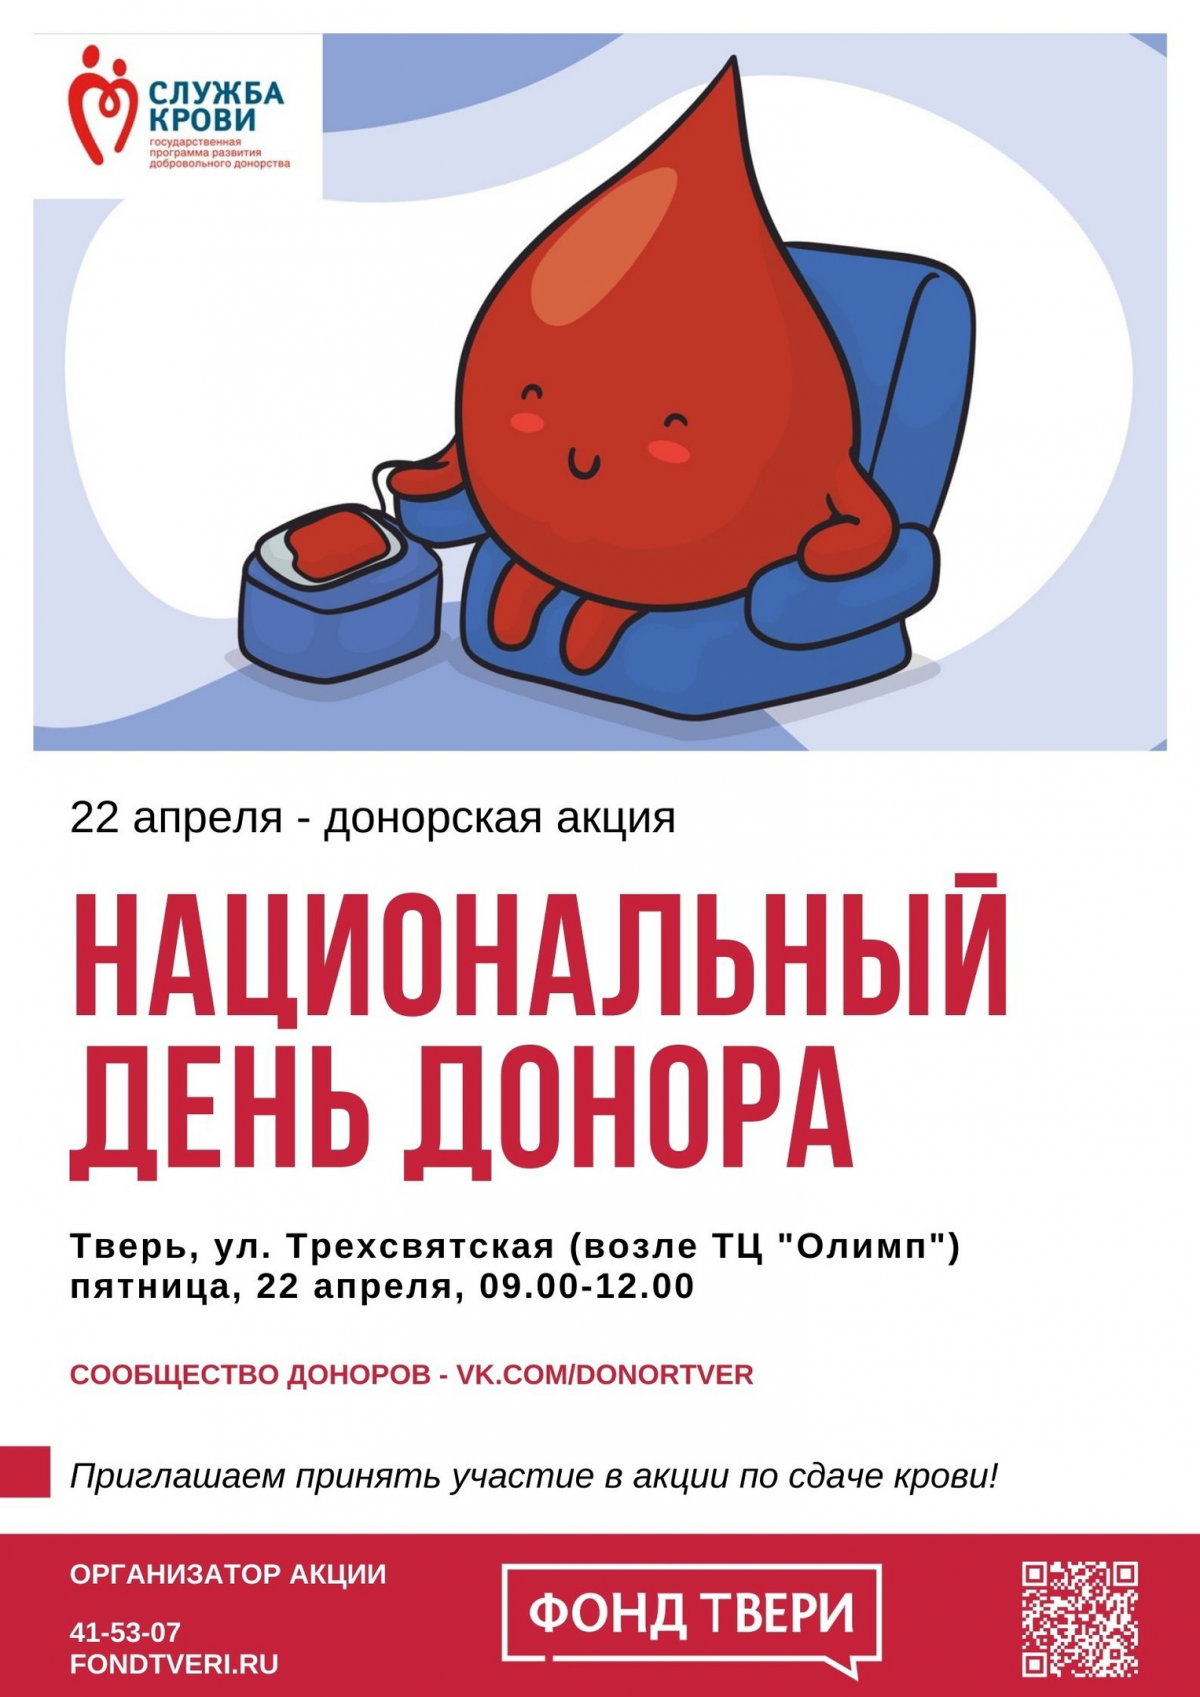 День донора. Национальный день донора. Национальный день донора крови в России. Акция день донора в России.